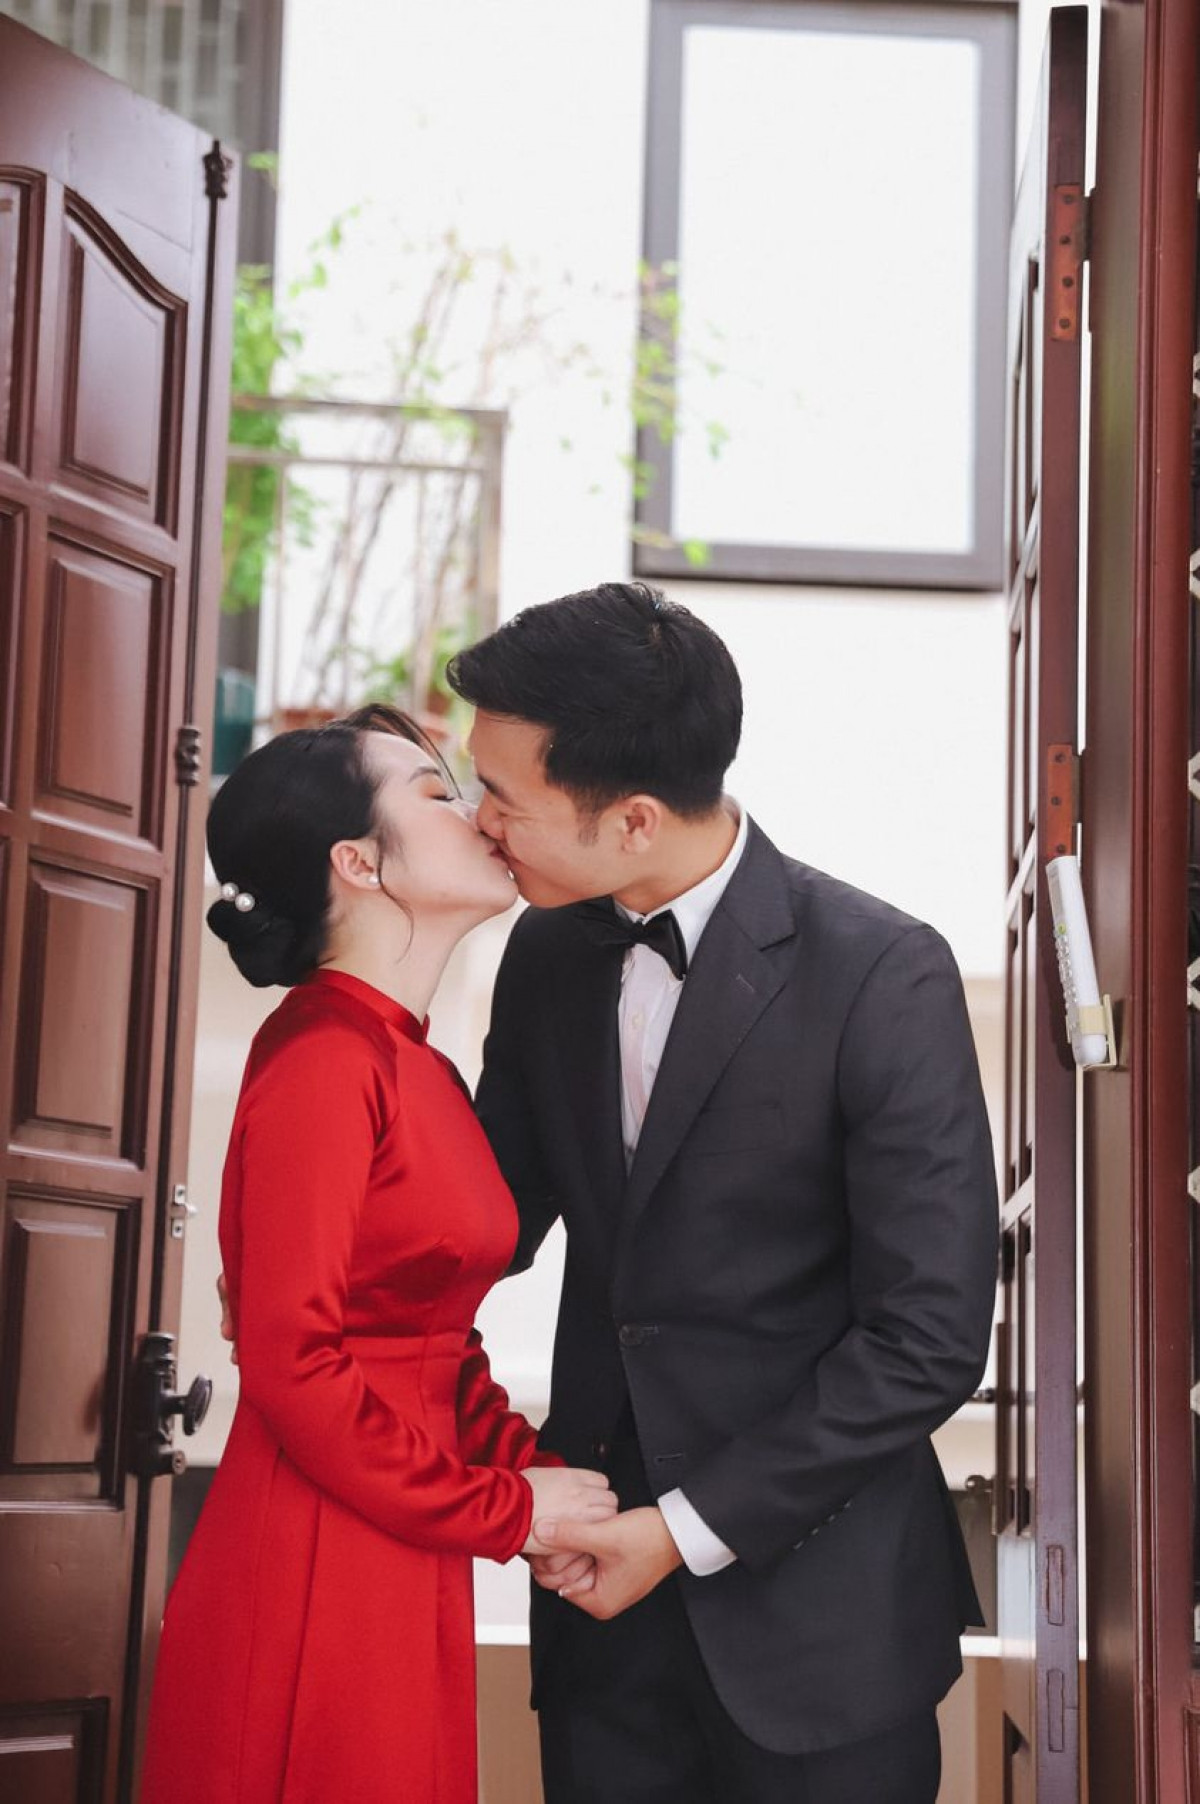 Hình ảnh ngọt ngào của cặp đôi Xuân Trường - Nhuệ Giang trong ngày vui.